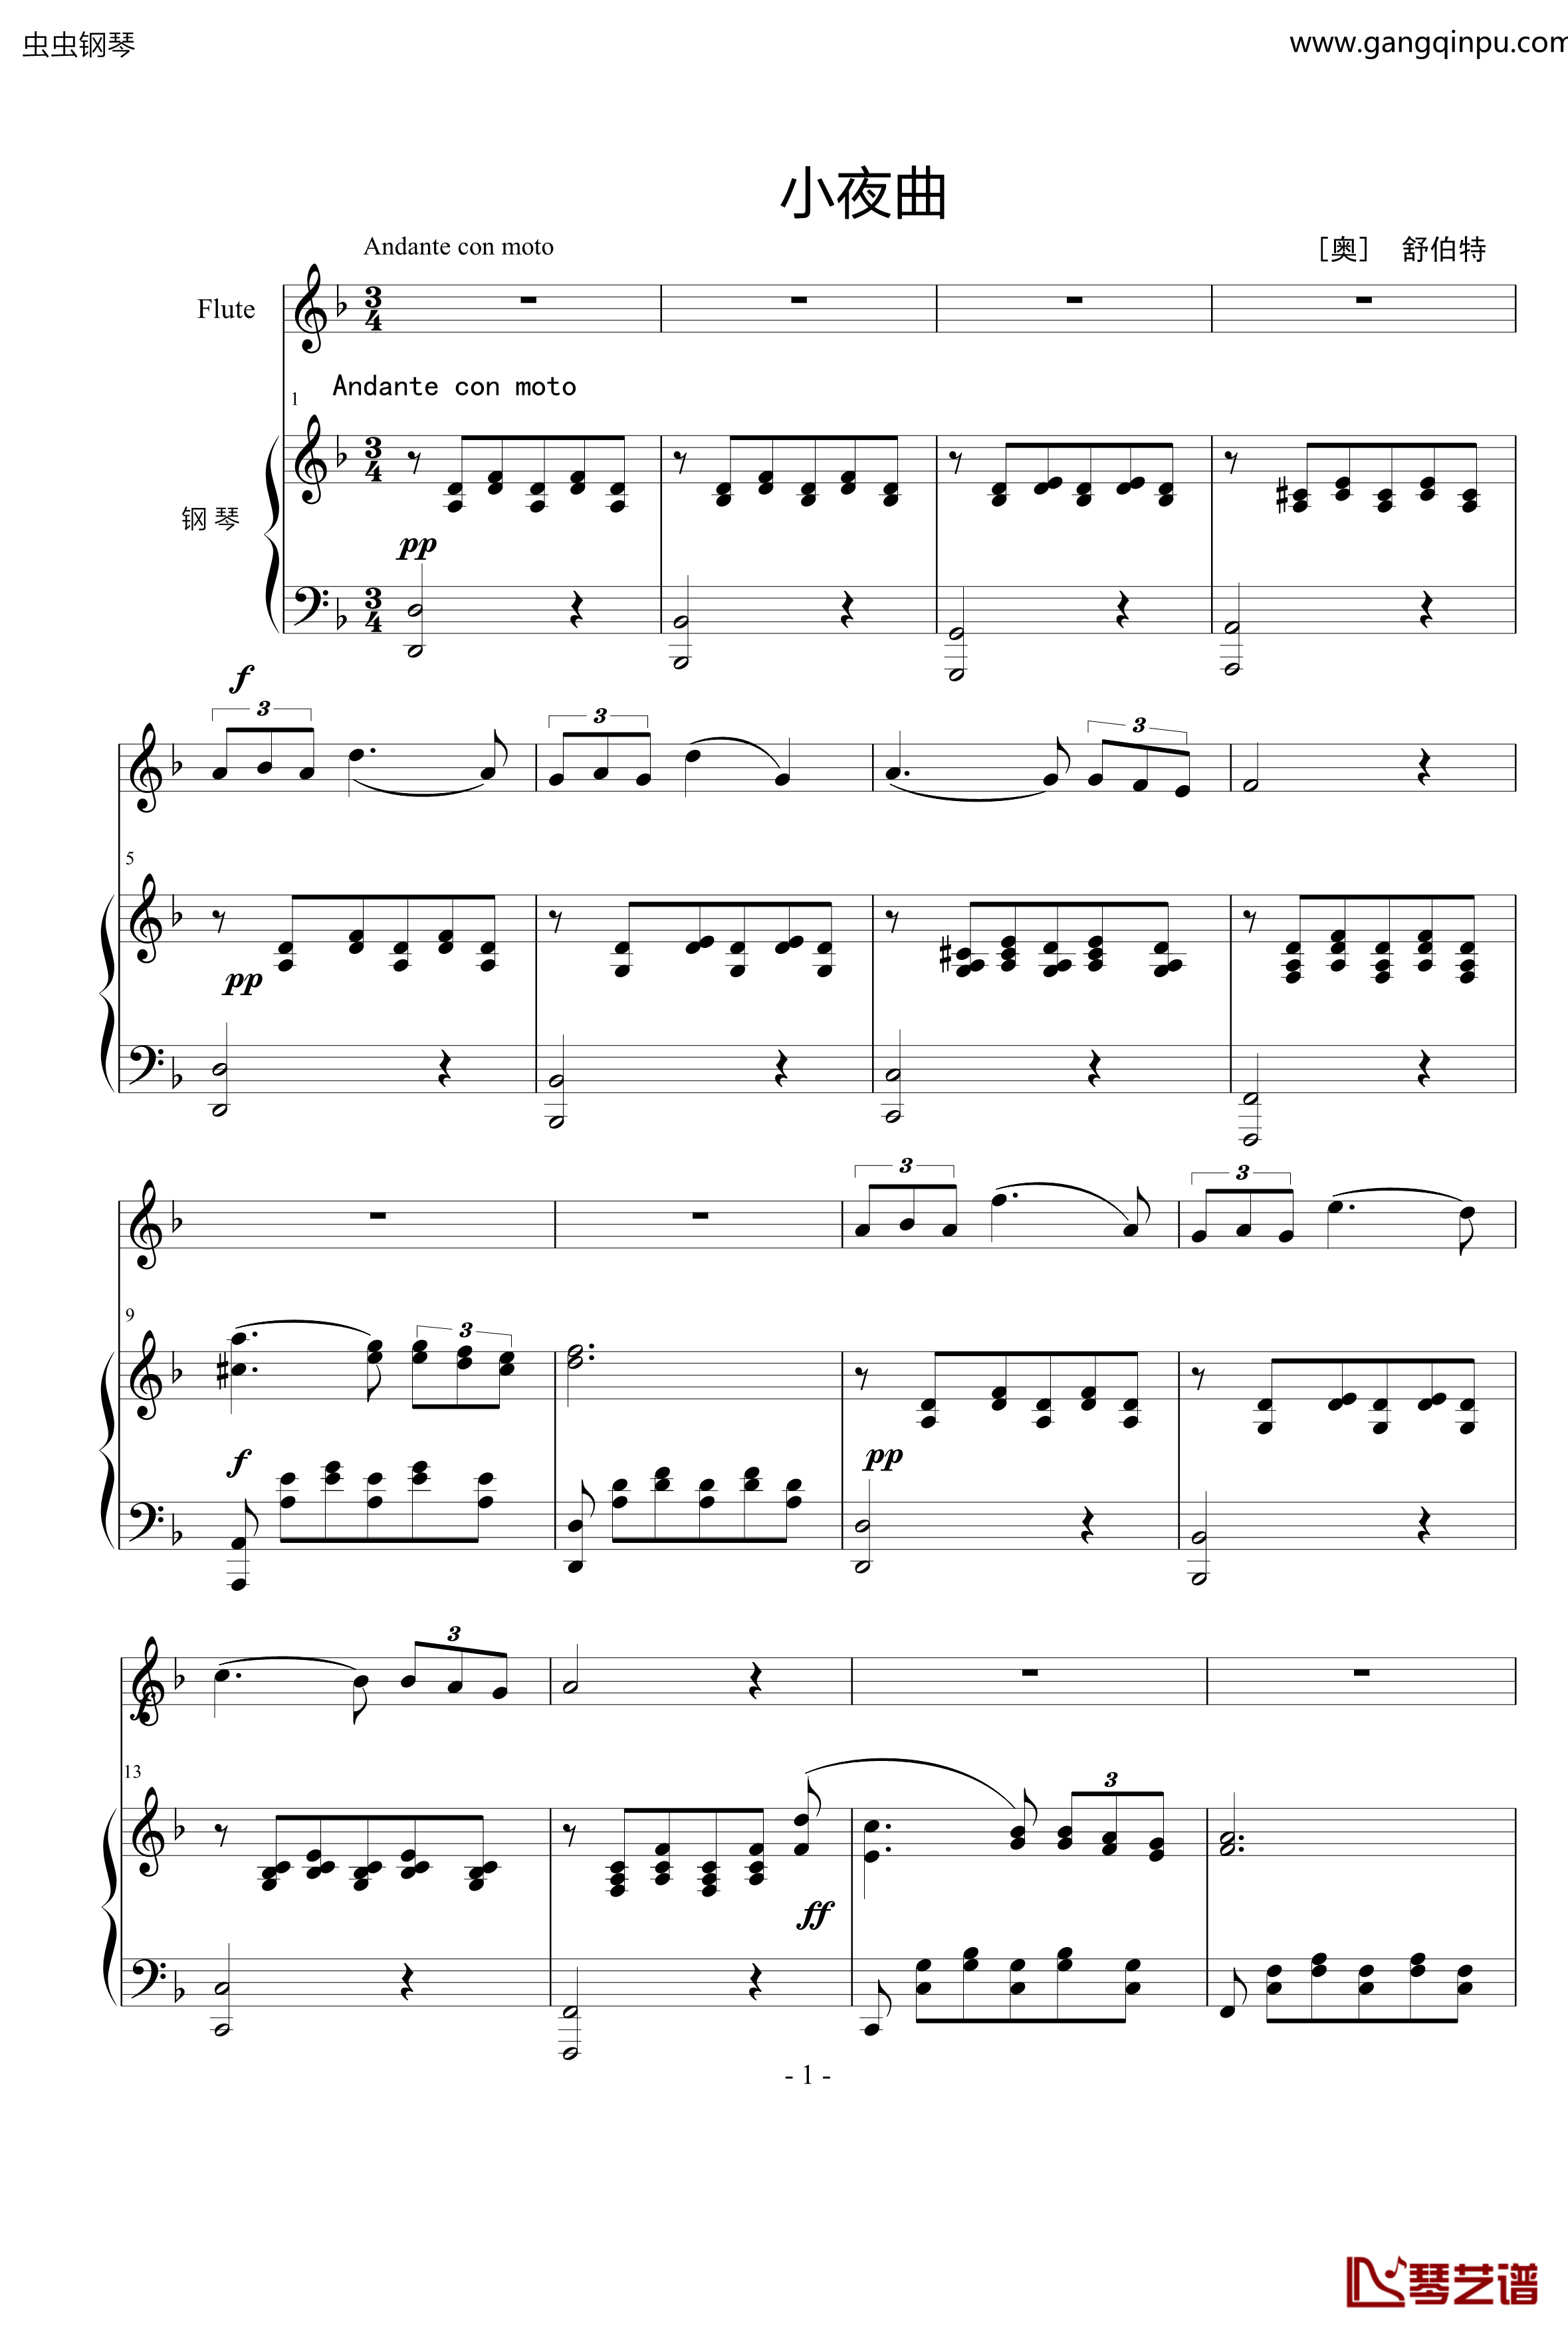 小夜曲钢琴谱-ove 格式长笛笛钢琴伴奏-舒伯特1